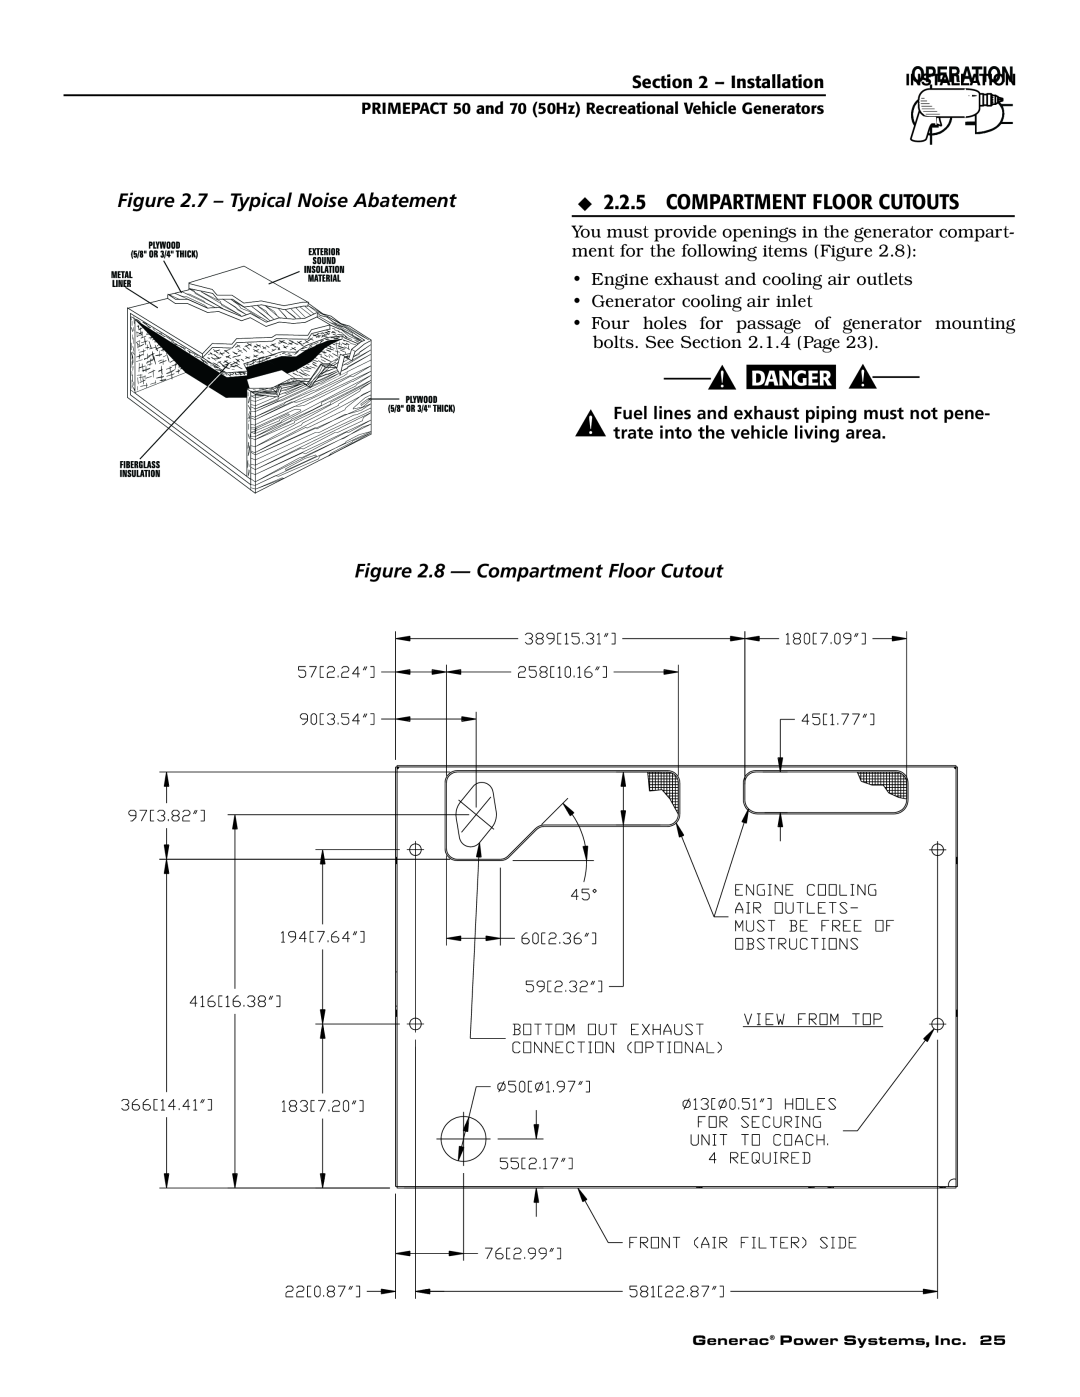 Generac 00784-2, 09290-4 owner manual Compartment Floor Cutouts, 7 - Typical Noise Abatement, 8 - Compartment Floor Cutout 